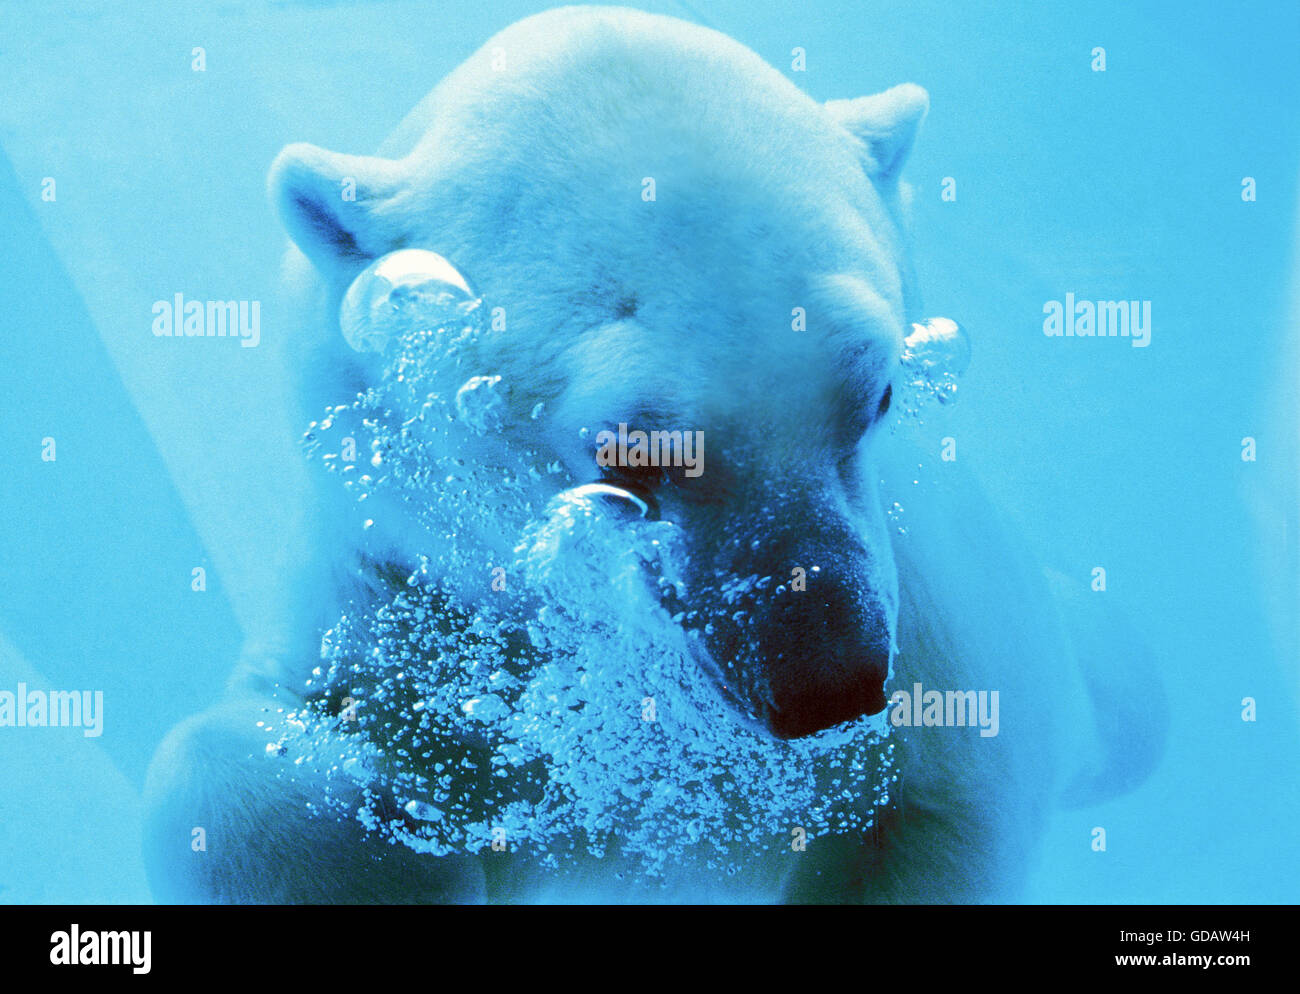 Oso Polar, Thalarctos maritimus, adulto bajo el agua. Foto de stock